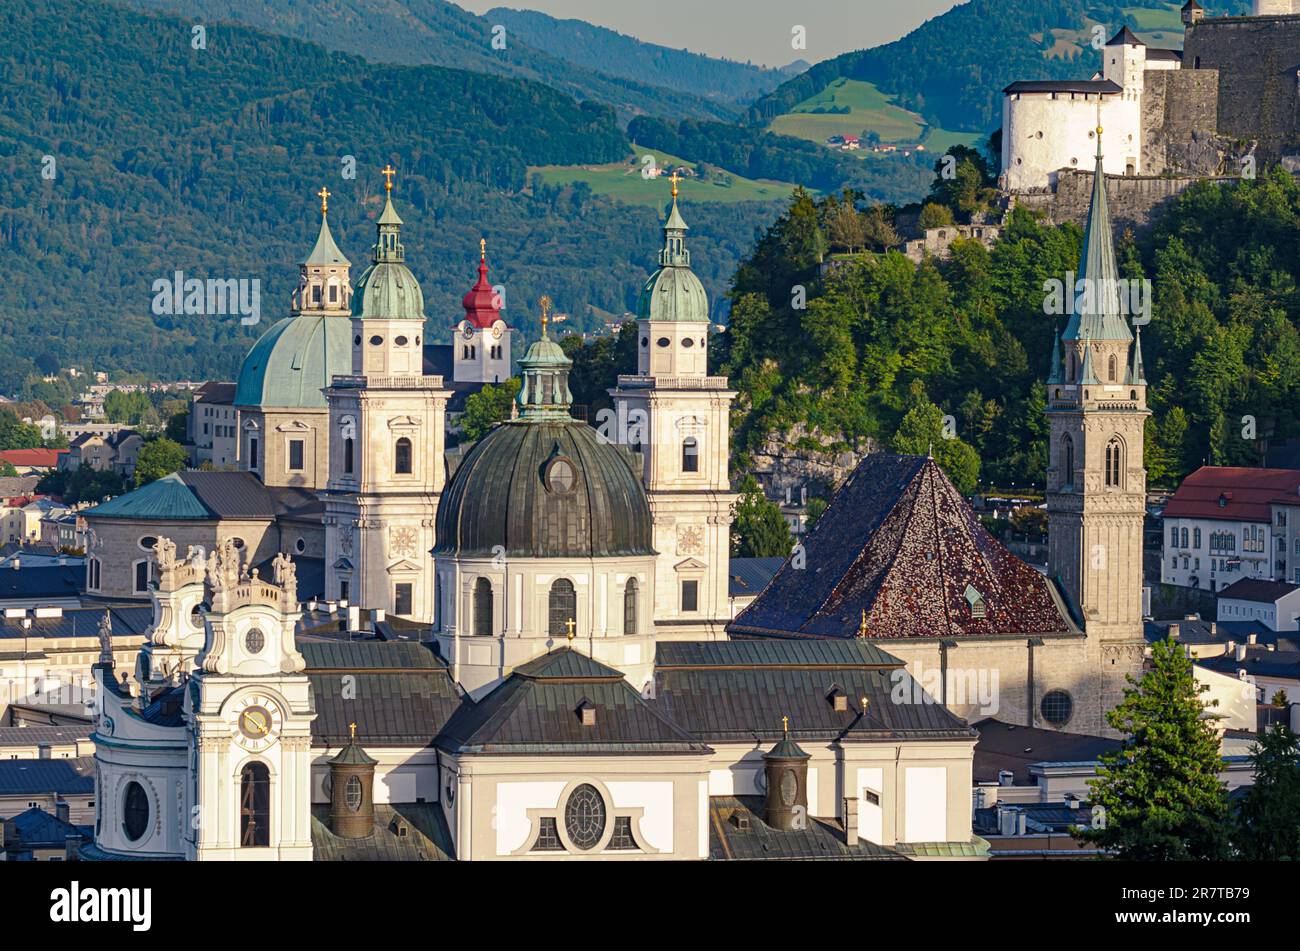 Salzburg, österreichische Stadt, Blick auf die Altstadt und das historische Zentrum mit der Kollegialkirche, Franziskanerkirche und Salzburger Kathedrale. Stockfoto